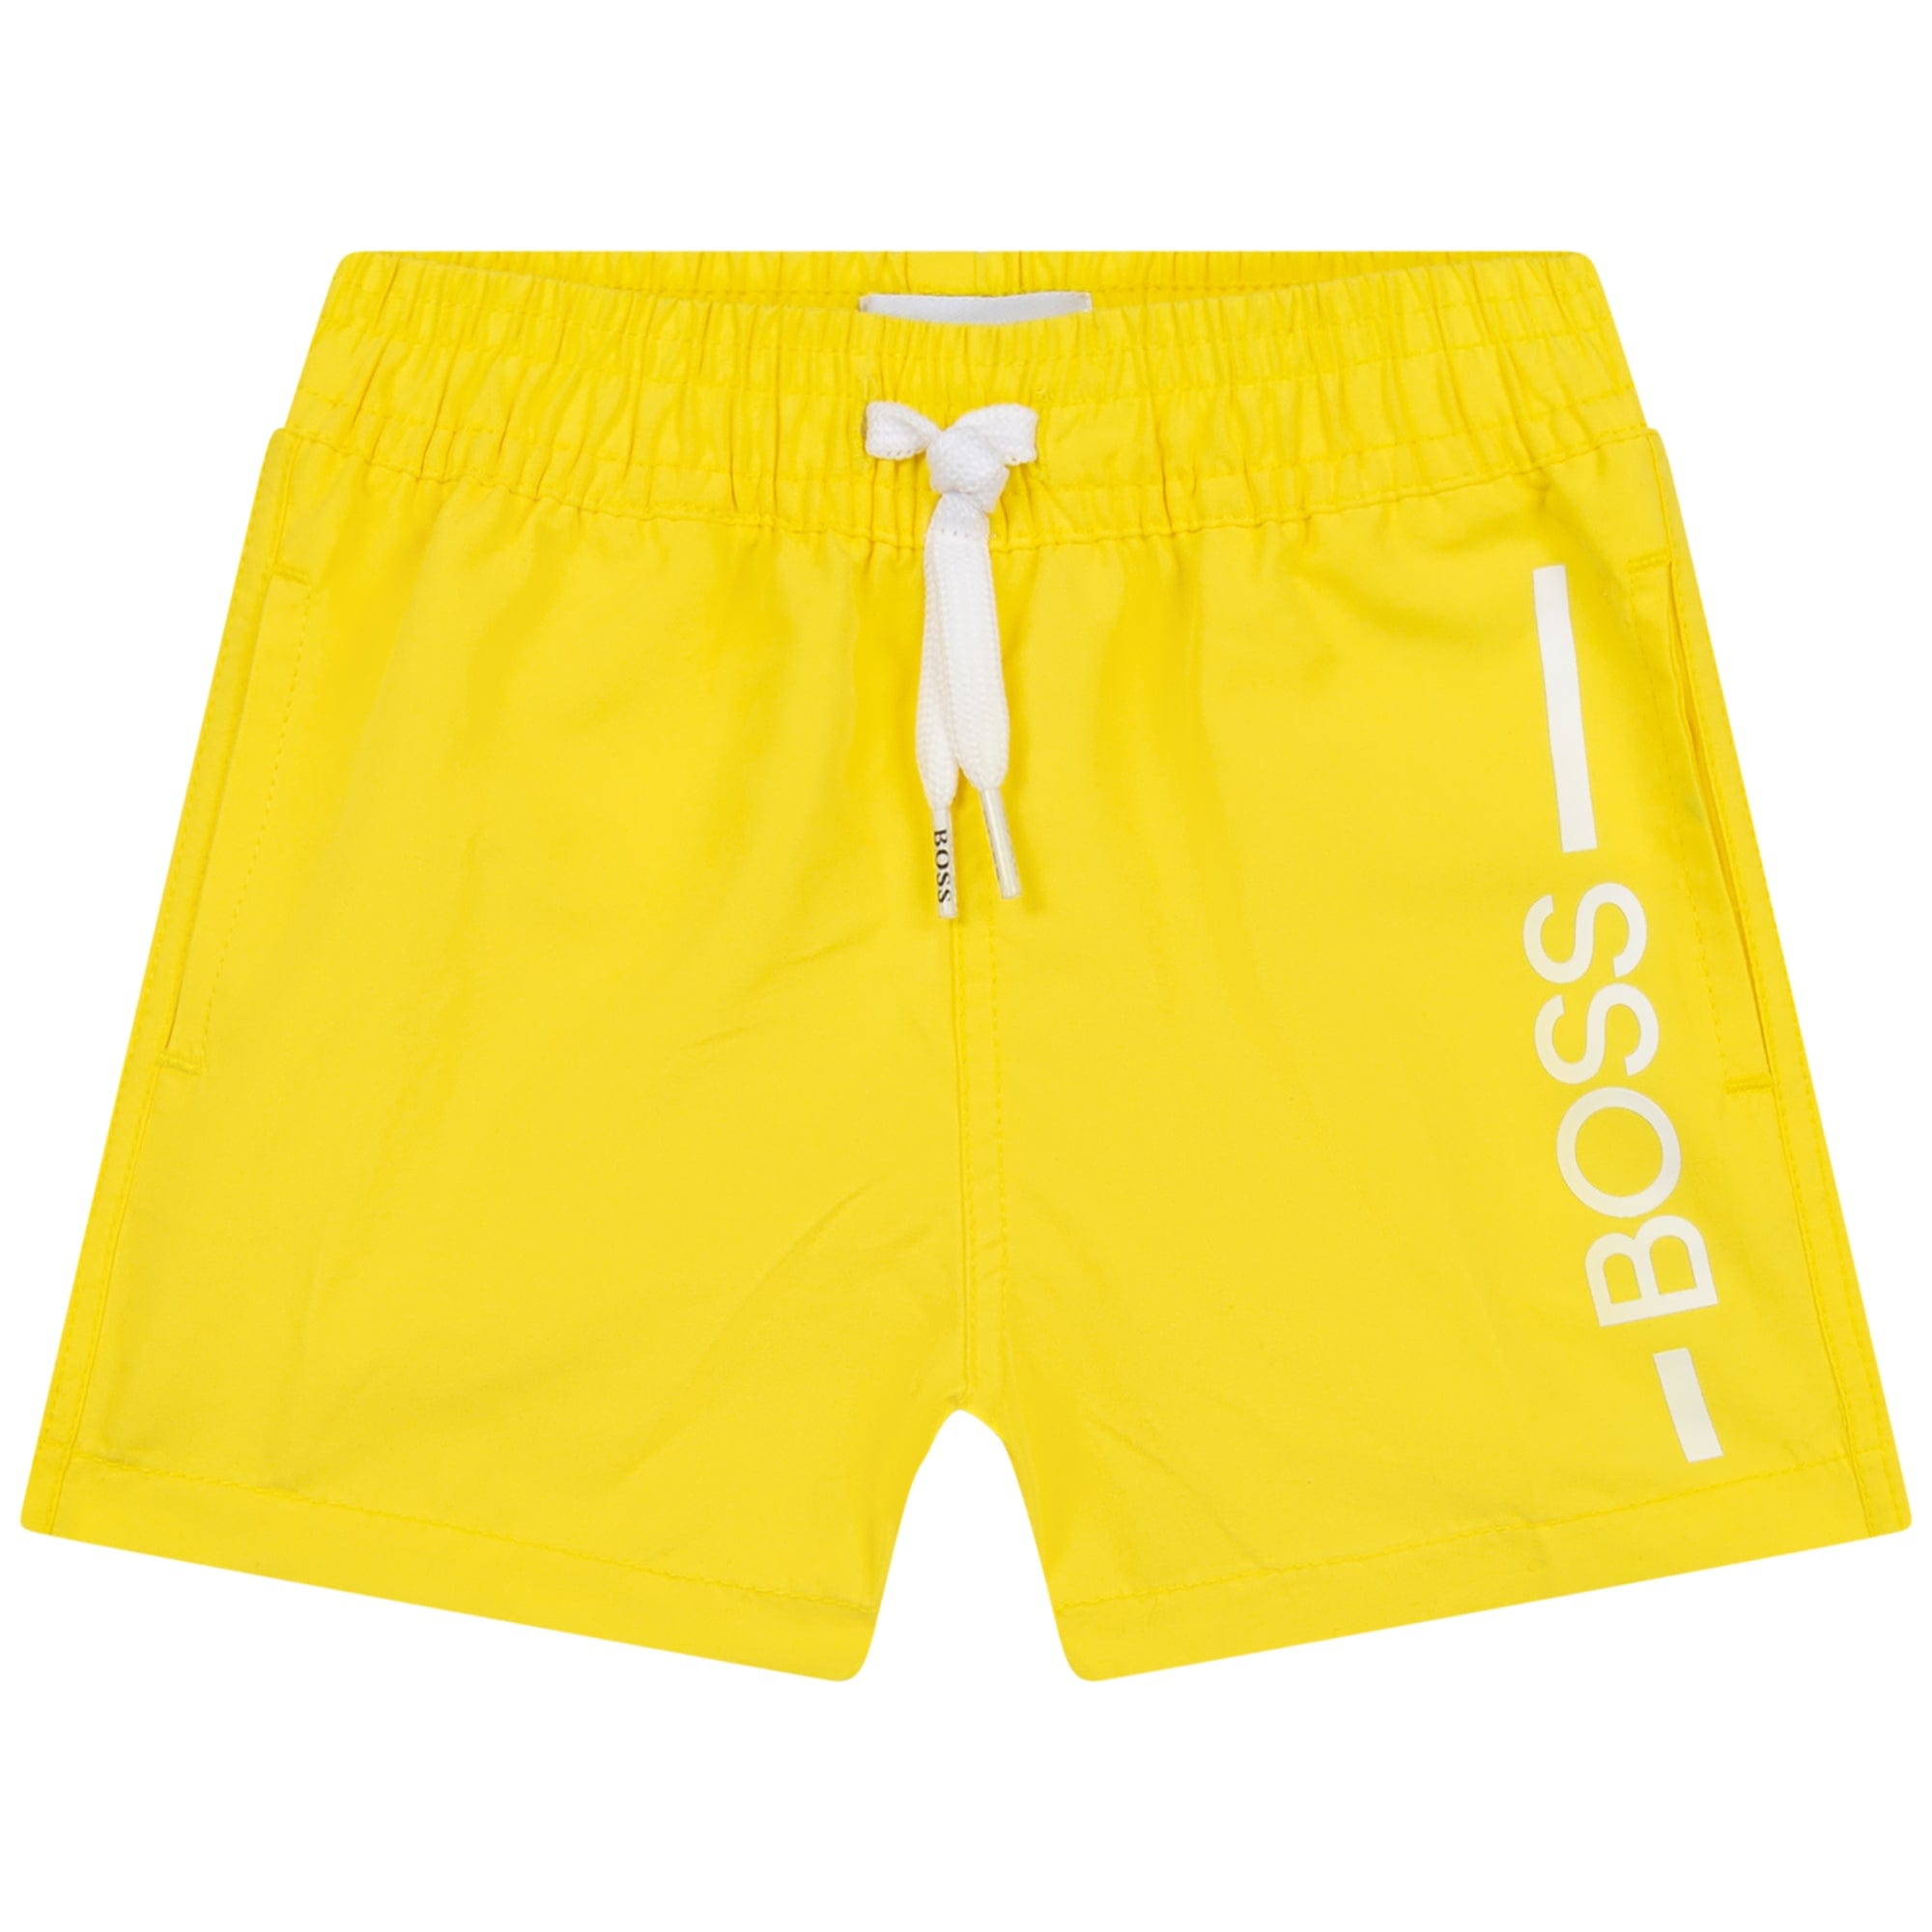 HUGO BOSS - Swim Shorts - Yellow